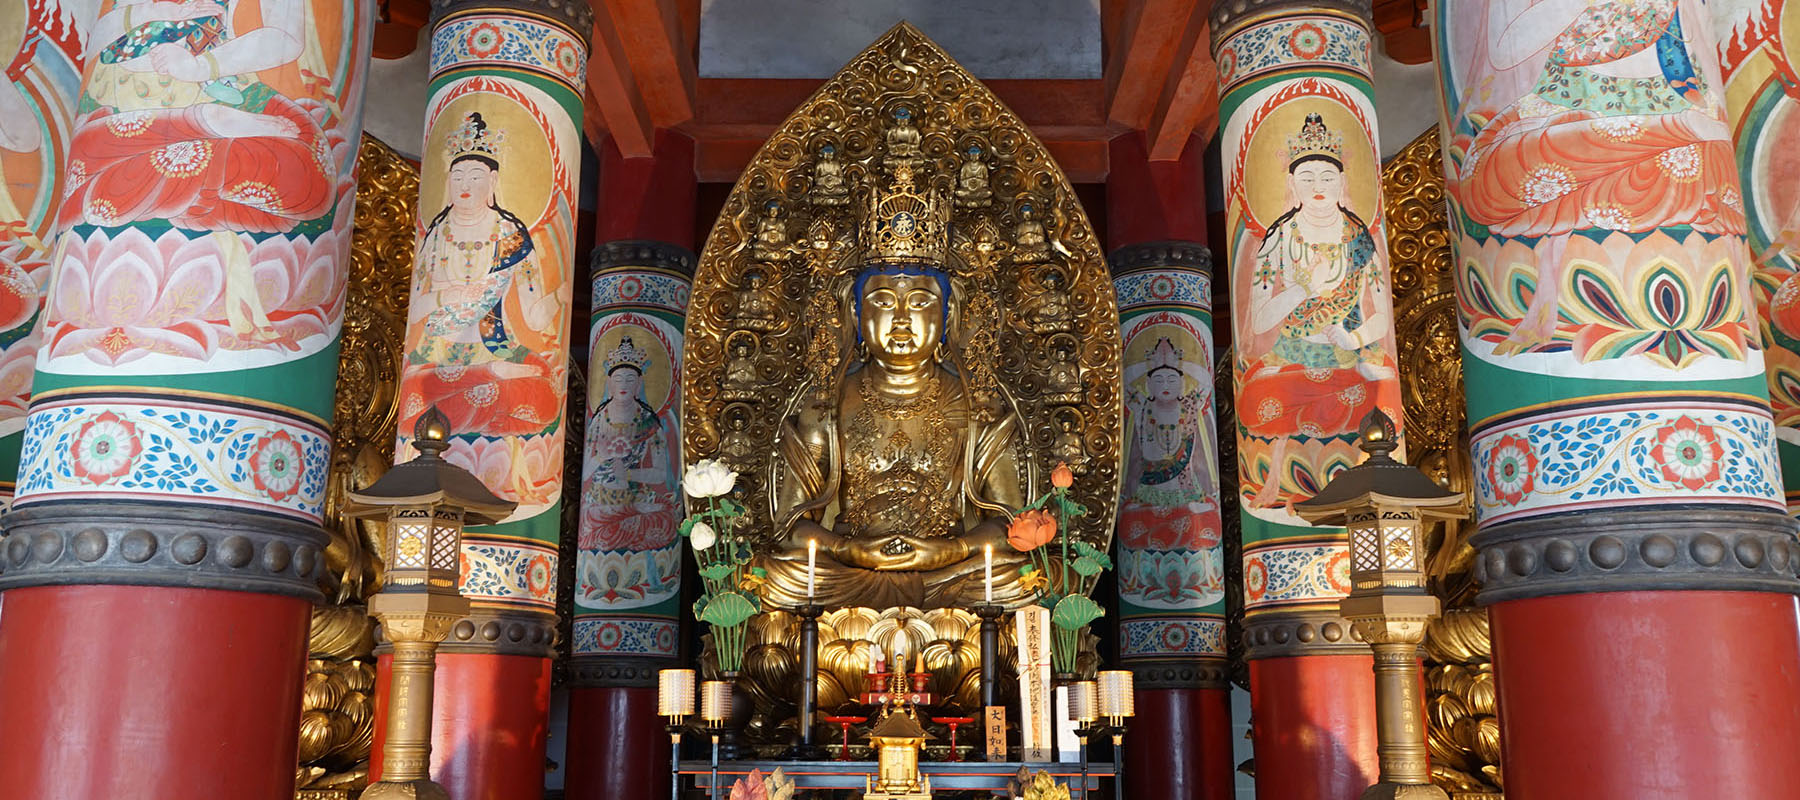 view of the interior of the kompon daito pagoda